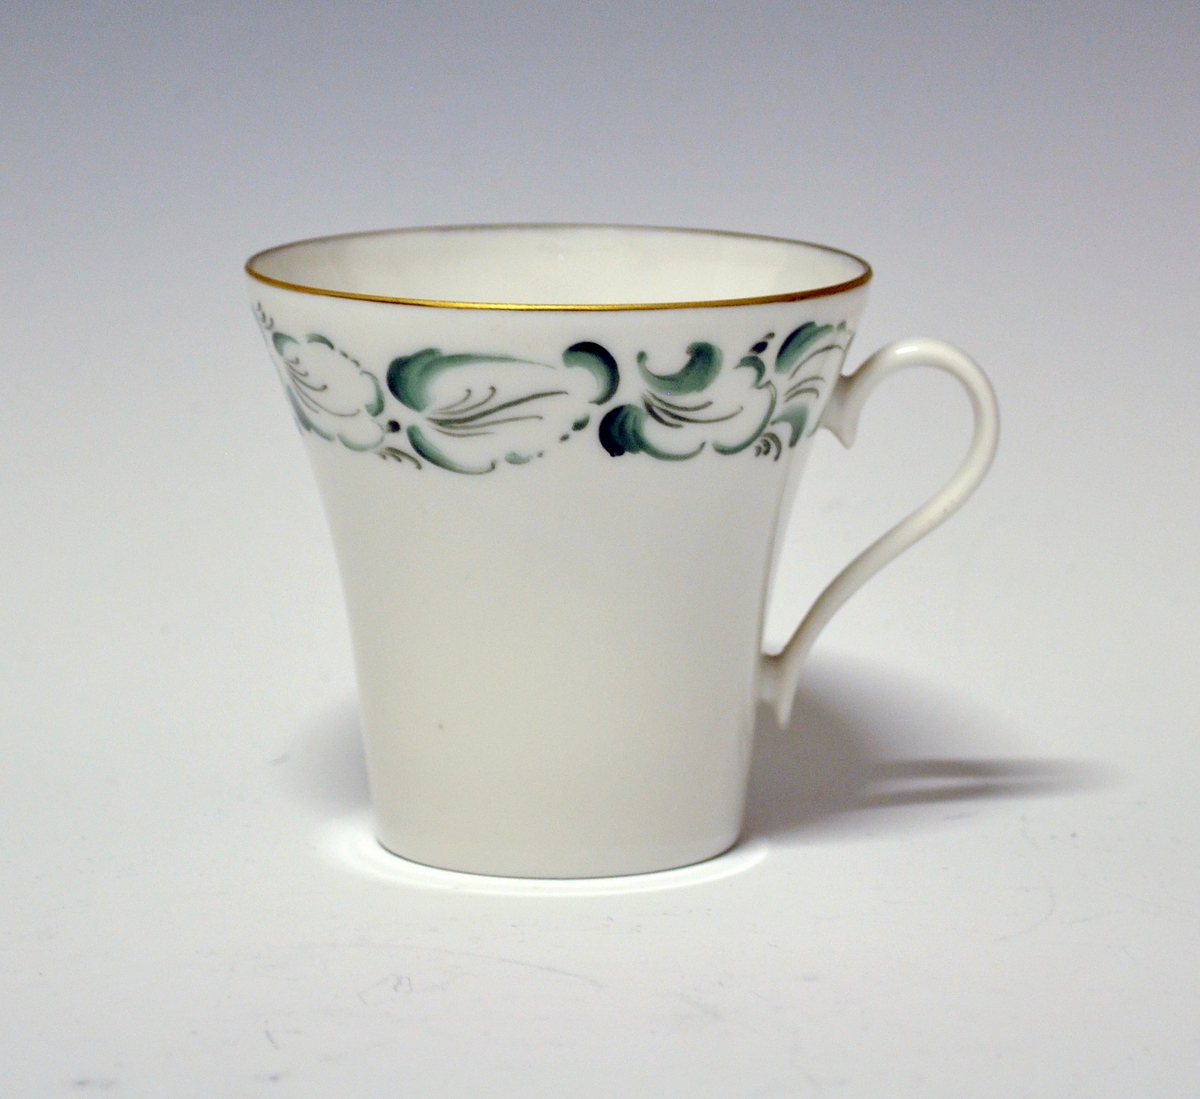 Kaffekopp av porselen. Grønne, stiliserte blader langs kanten. Gullstrek på hank og øverst på koppen.
Håndmalt dekor av Knut Andersen 1975.